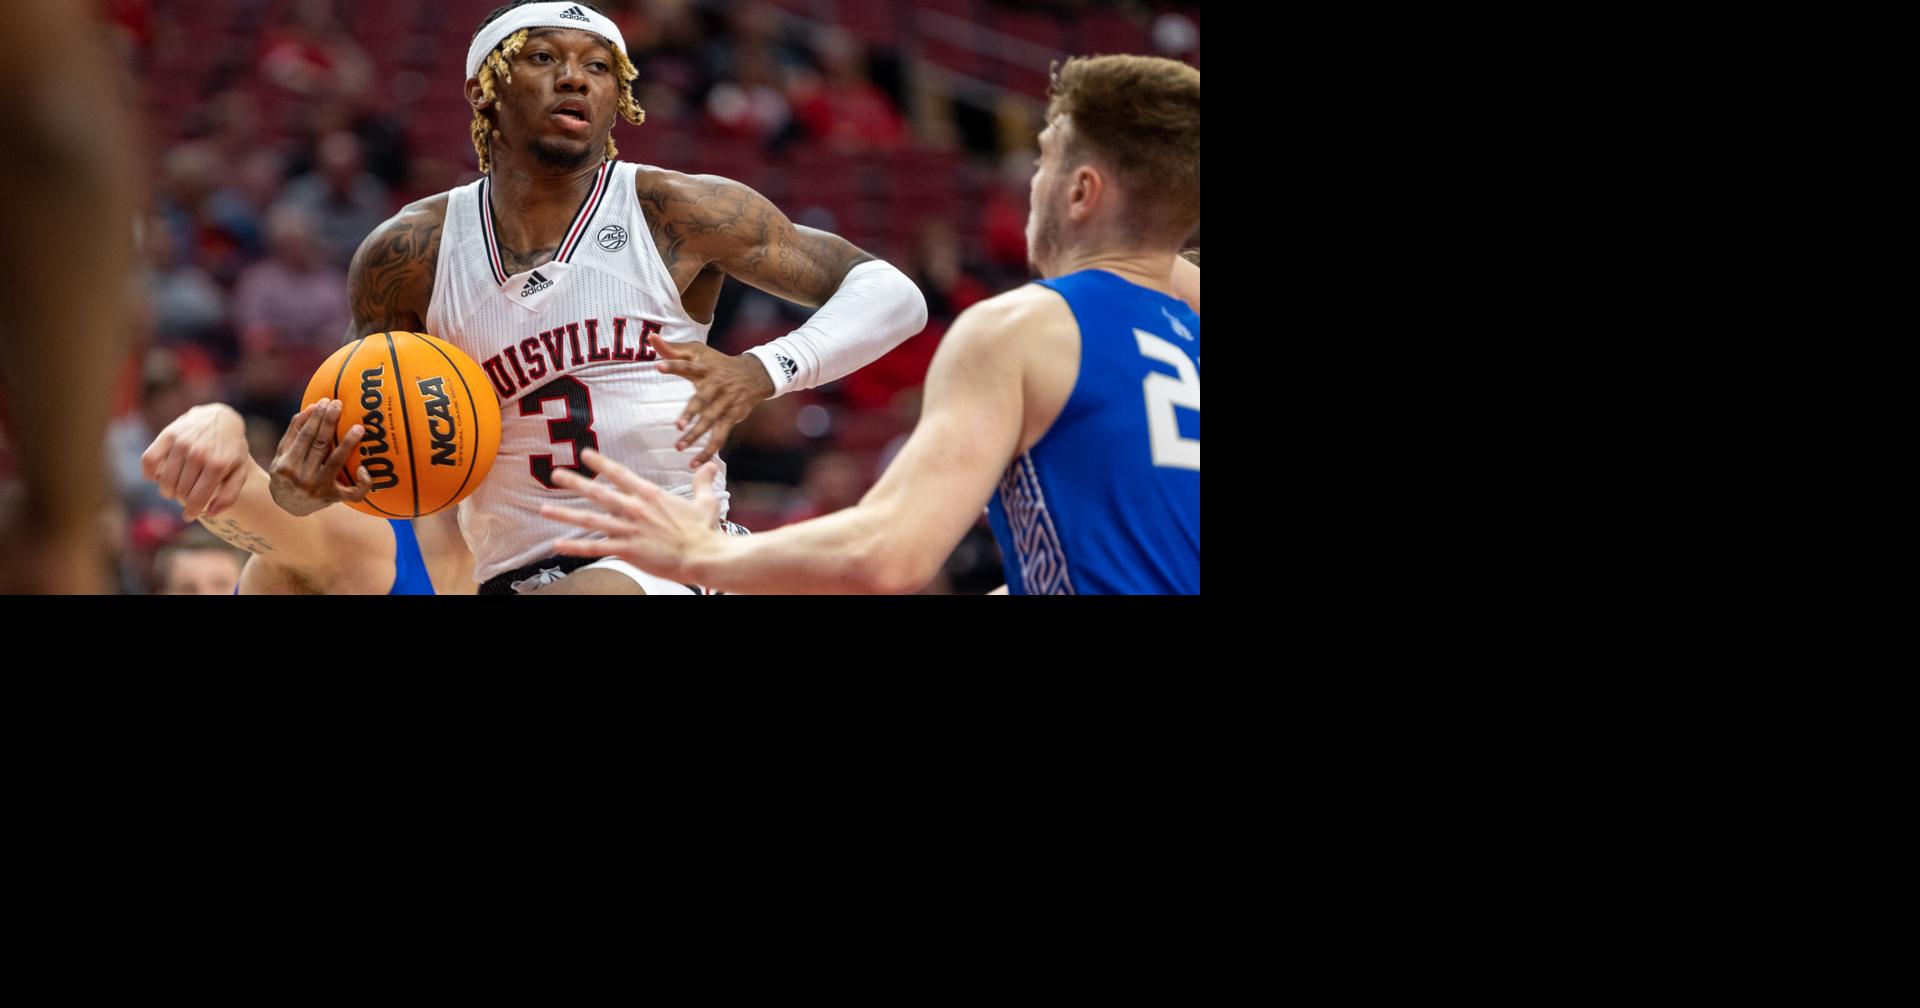 Report: Louisville Forward/Center Roosevelt Wheeler Enters